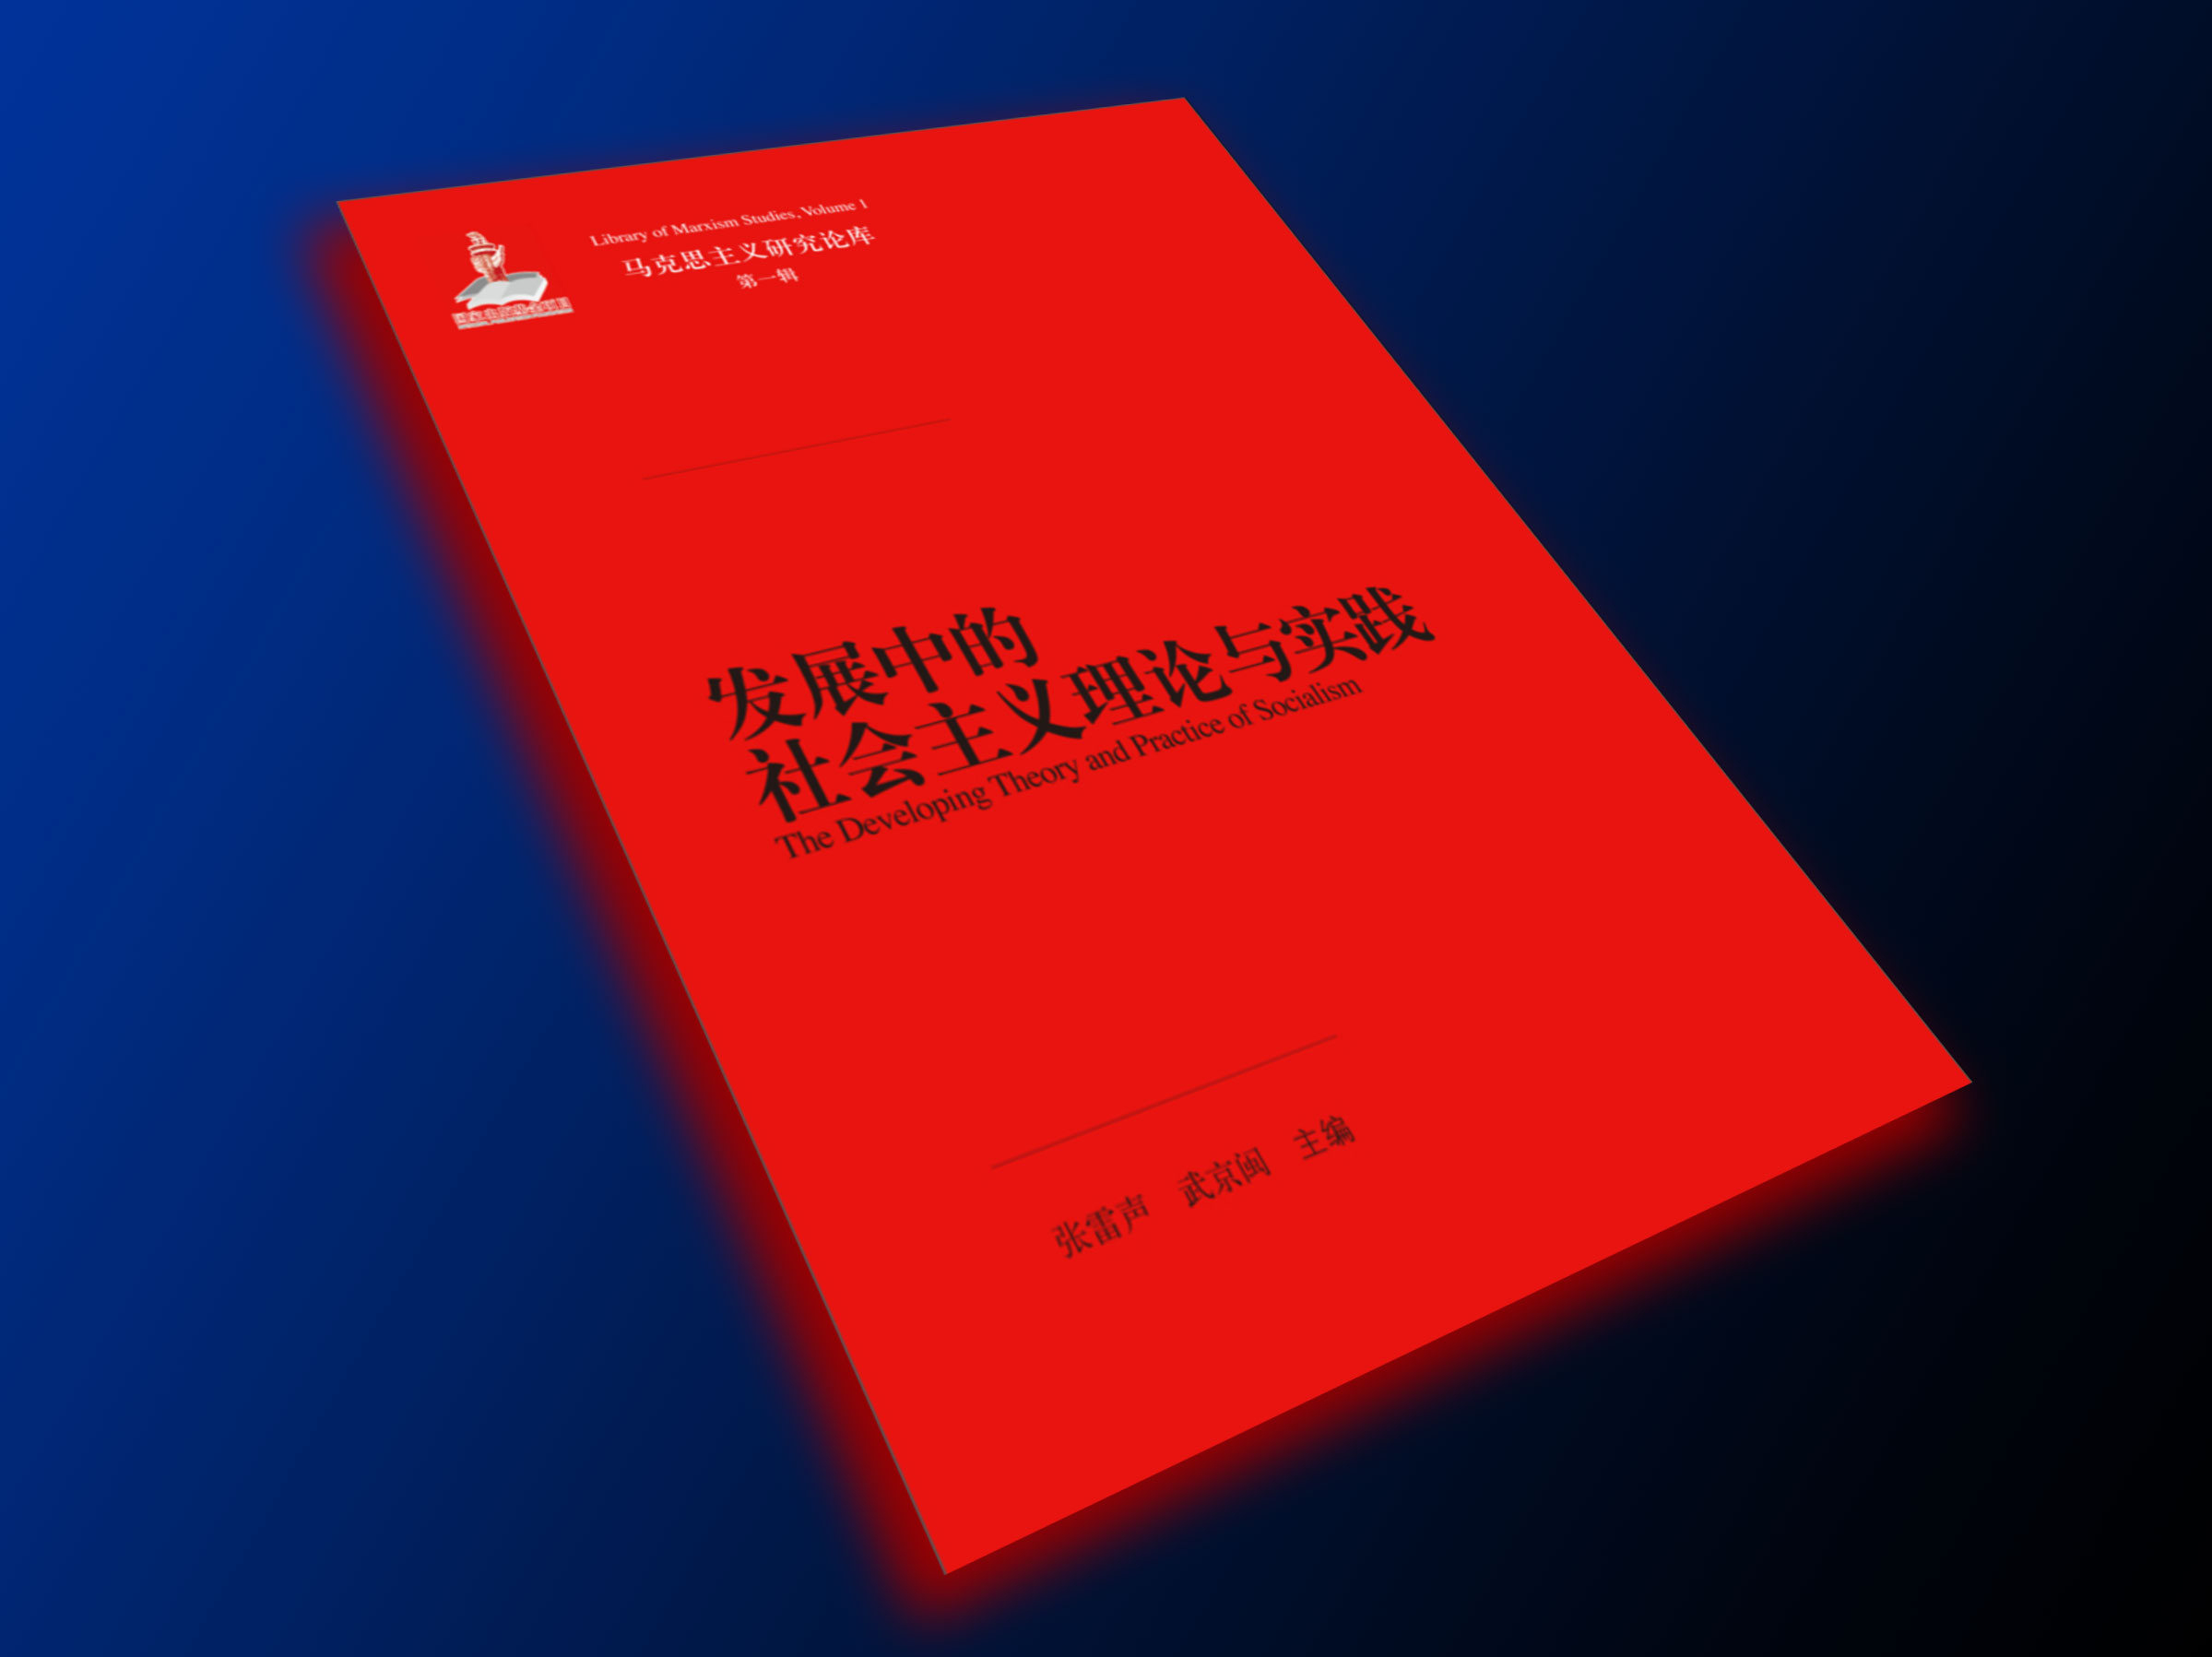 发展中的社会主义理论与实践（马克思主义研究论库·第一辑）（国家出版基金项目）